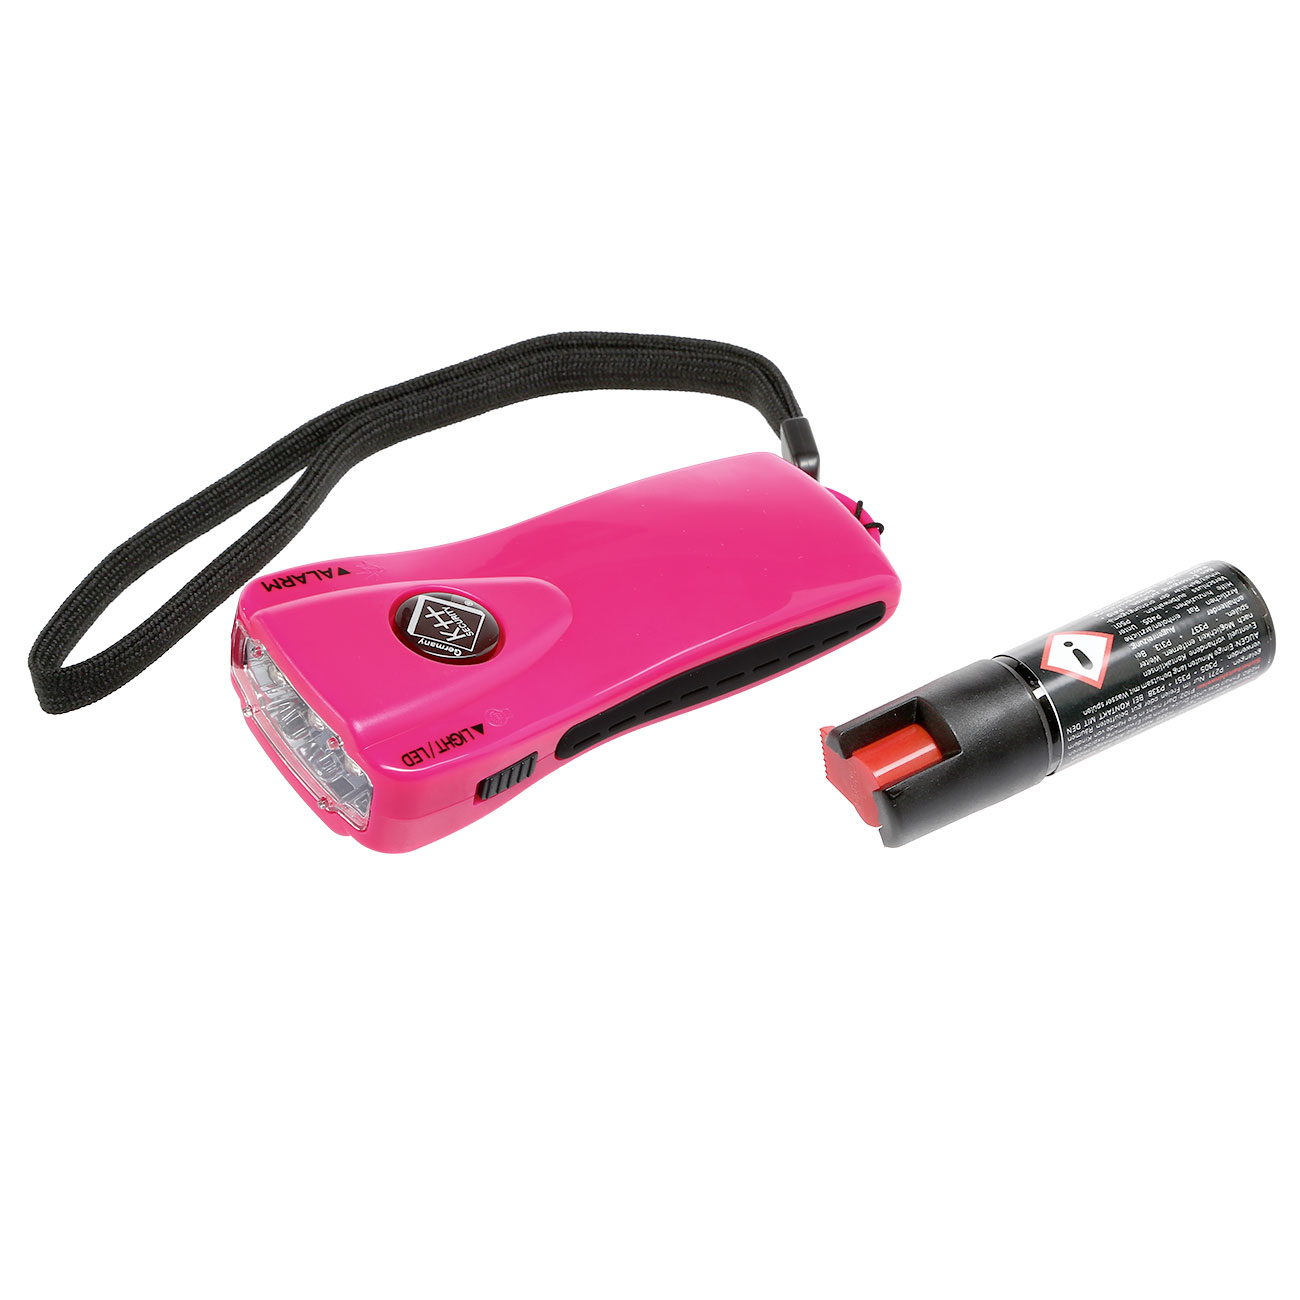 Geschenkset mit Pepper Jet Pocket Pfefferspray und Alarm LED-Taschenlampe pink Bild 1